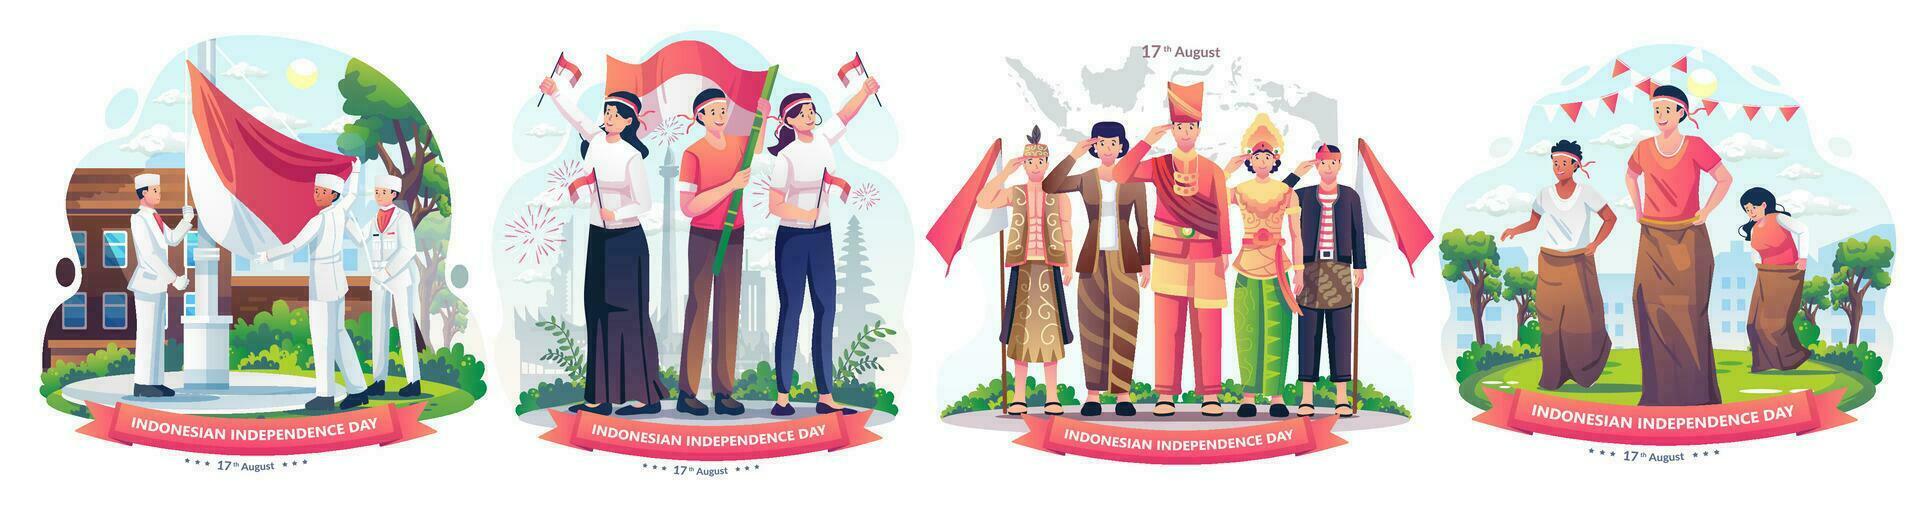 einstellen von Menschen feiern Indonesiens Unabhängigkeit Tag auf August 17 .. Illustration vektor